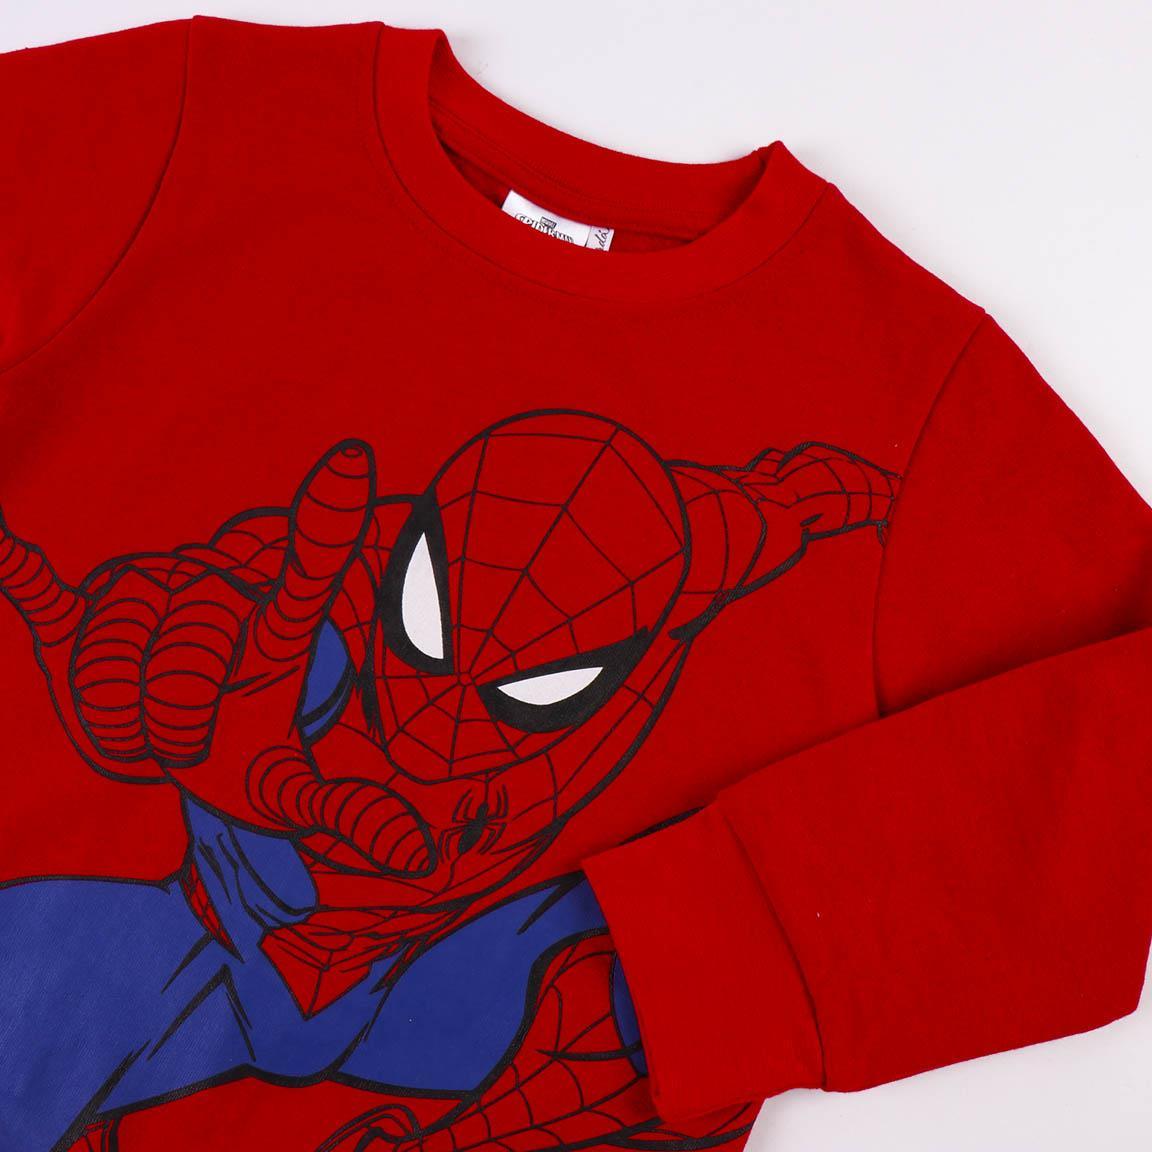 Tuta bambino - Marvel Spiderman - Magic Dreams Store